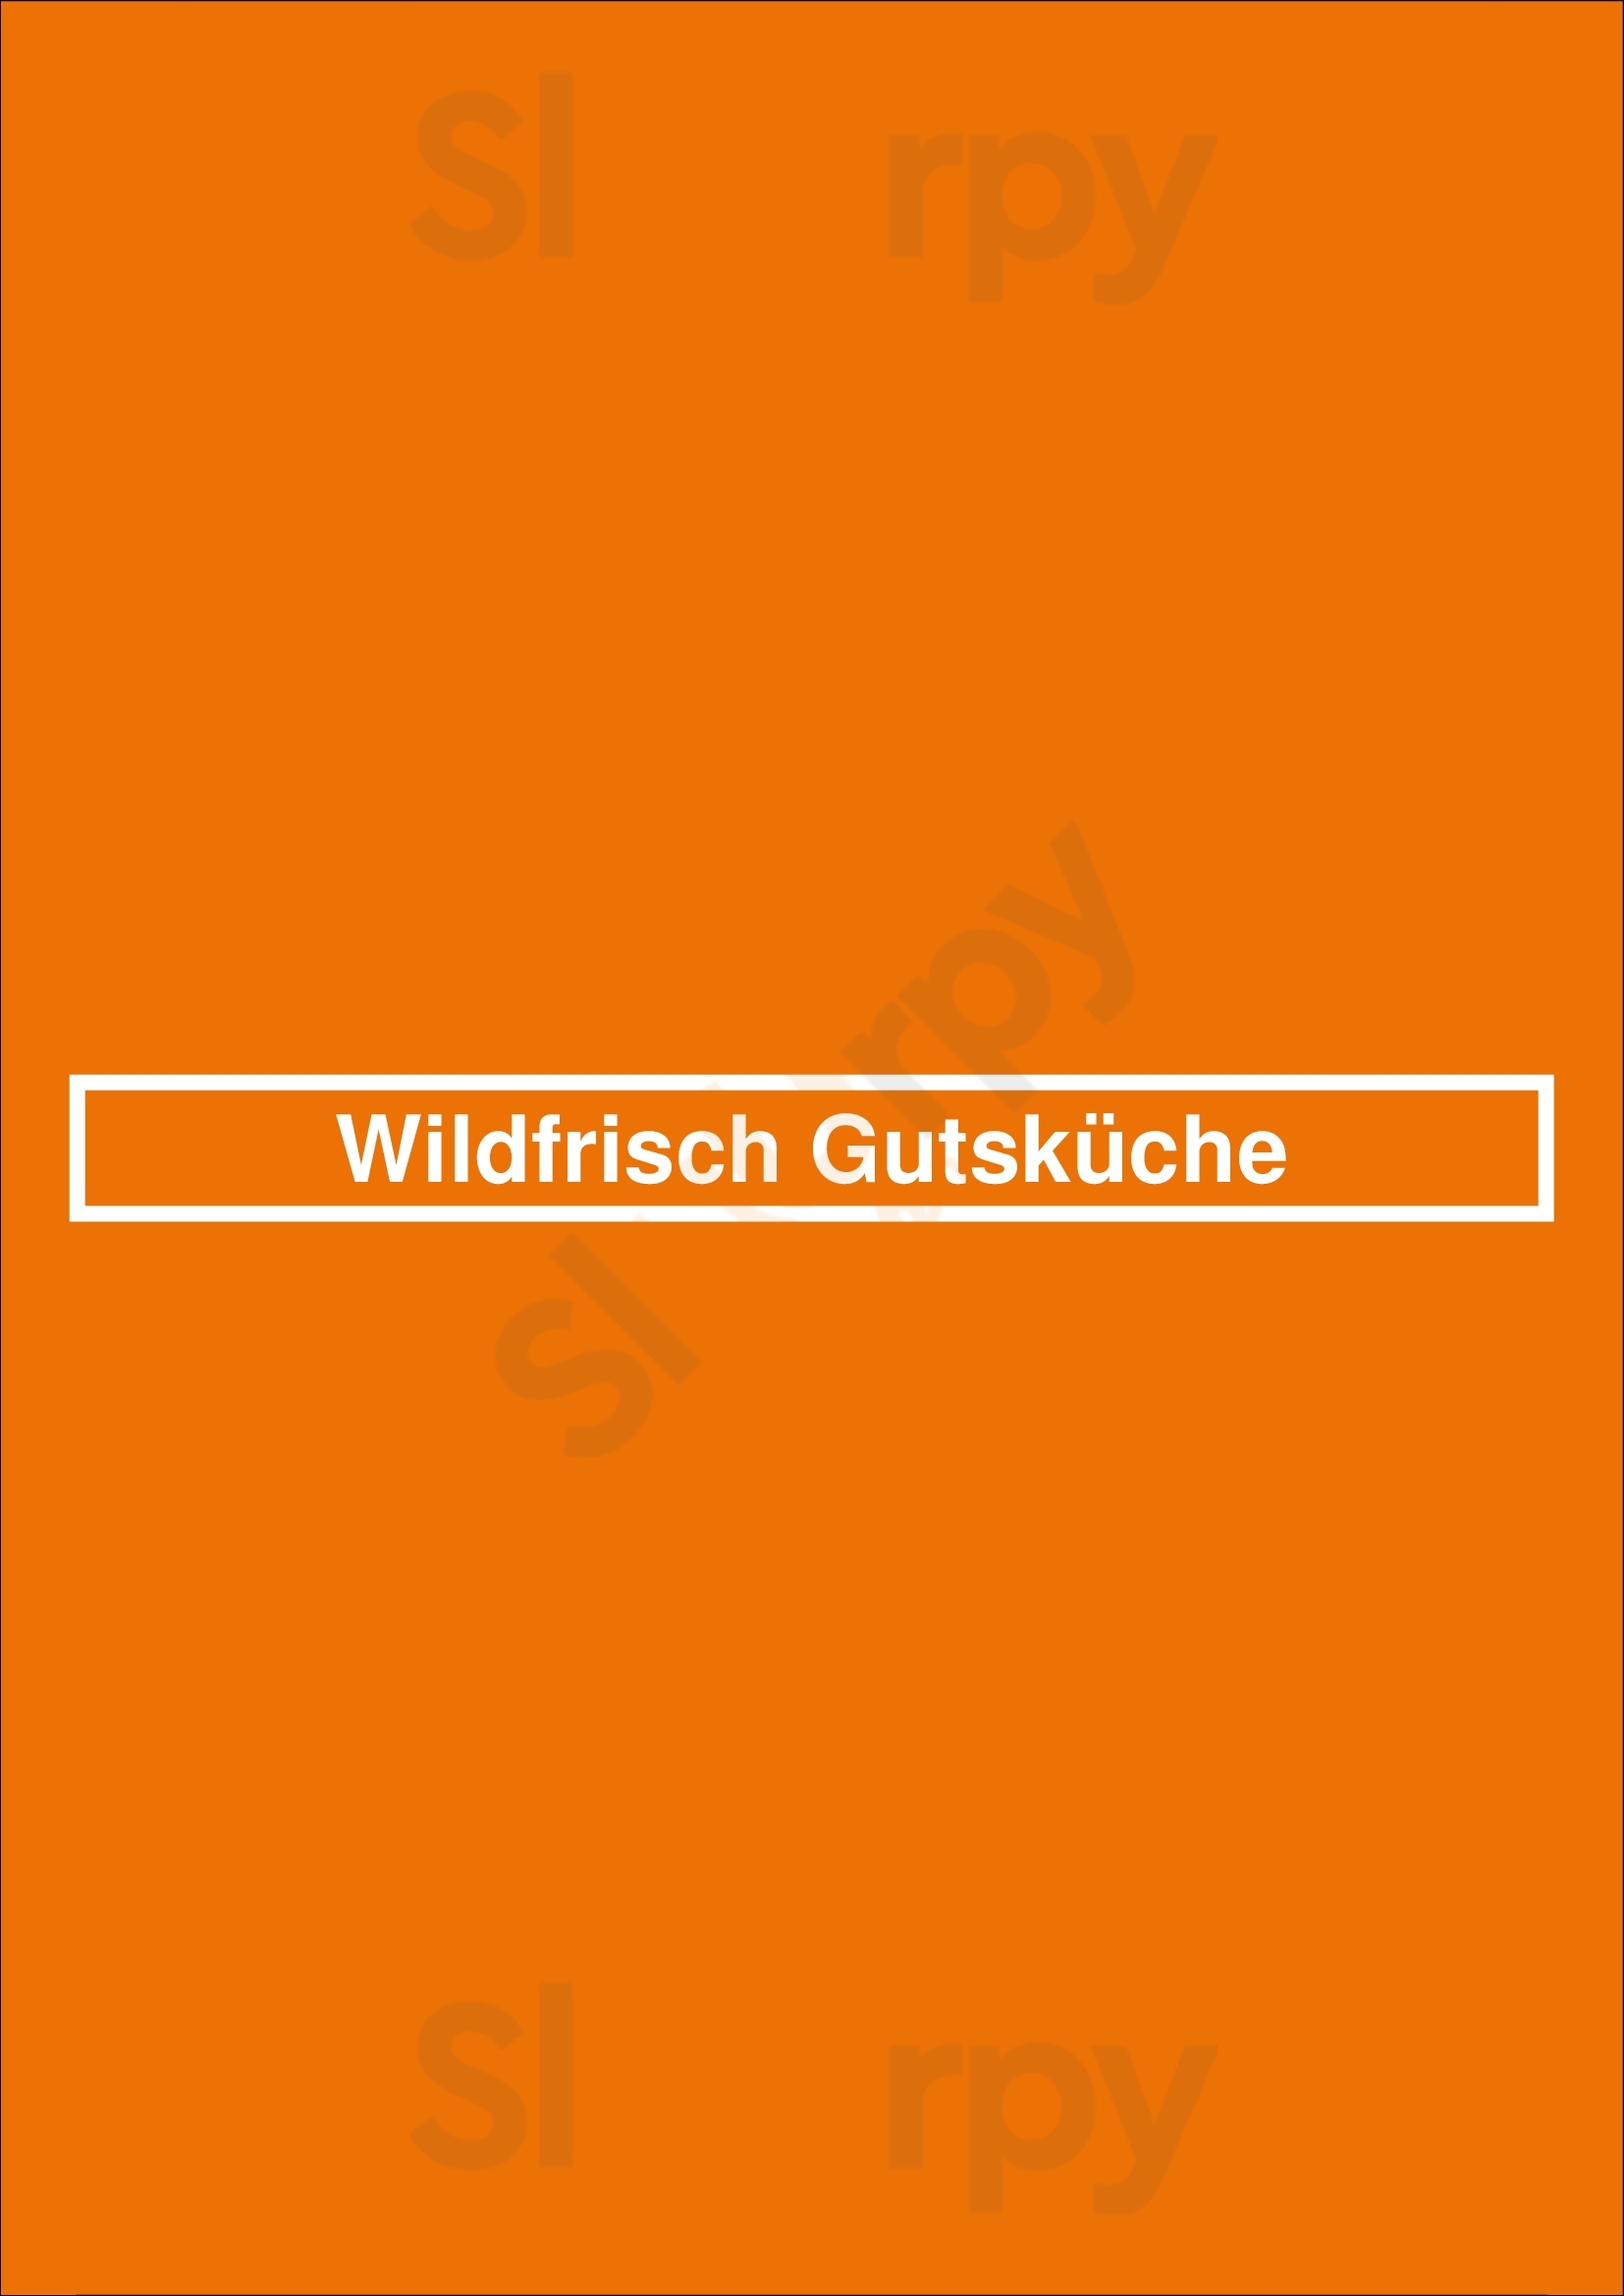 Wildfrisch Gutsküche Wolfsburg Menu - 1